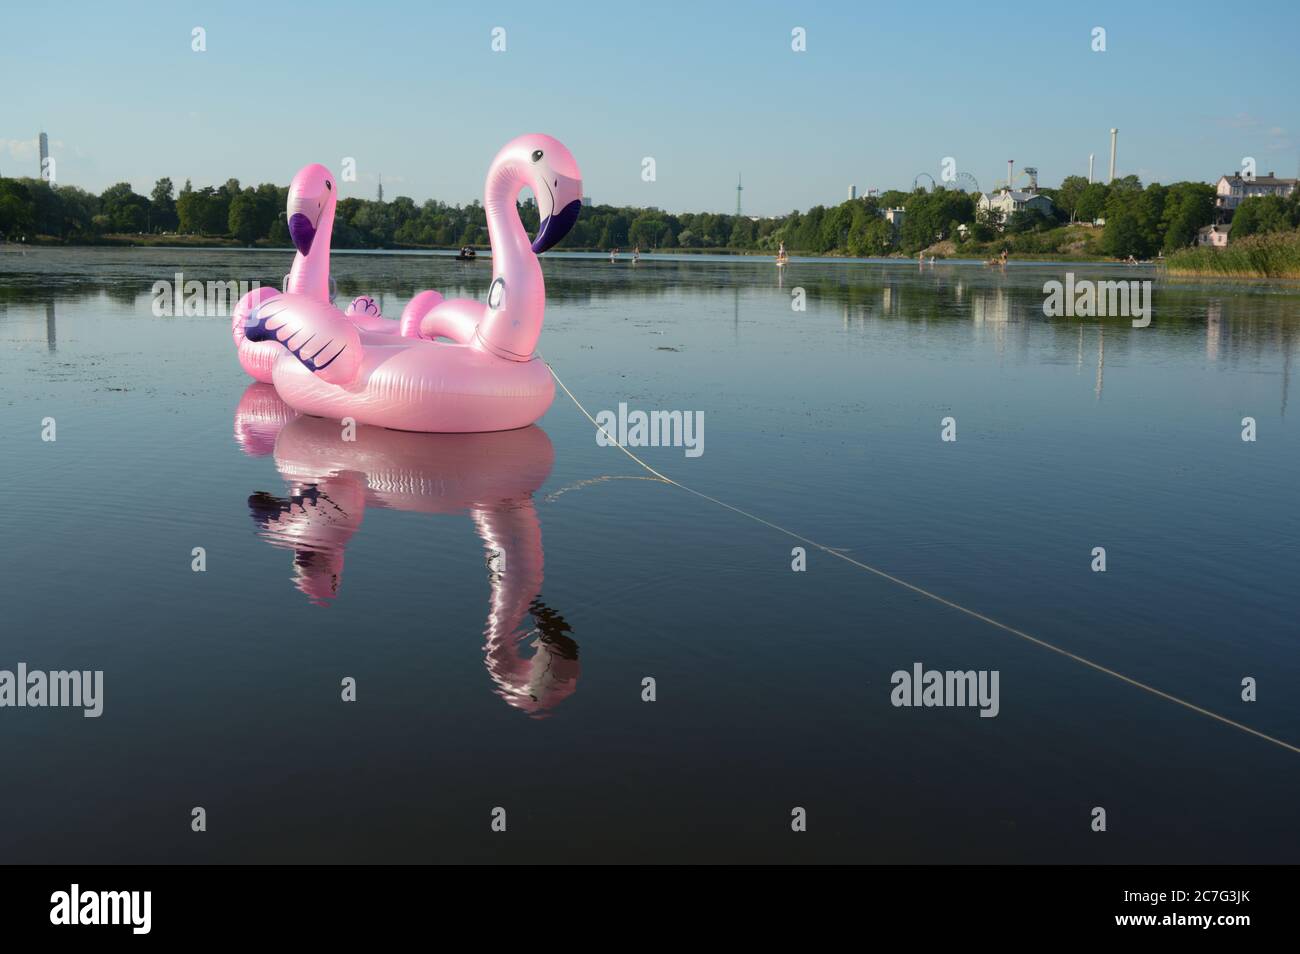 Flamant rose gonflable jouet flamant sur le lac dans le centre d'Helsinki, Finlande Banque D'Images